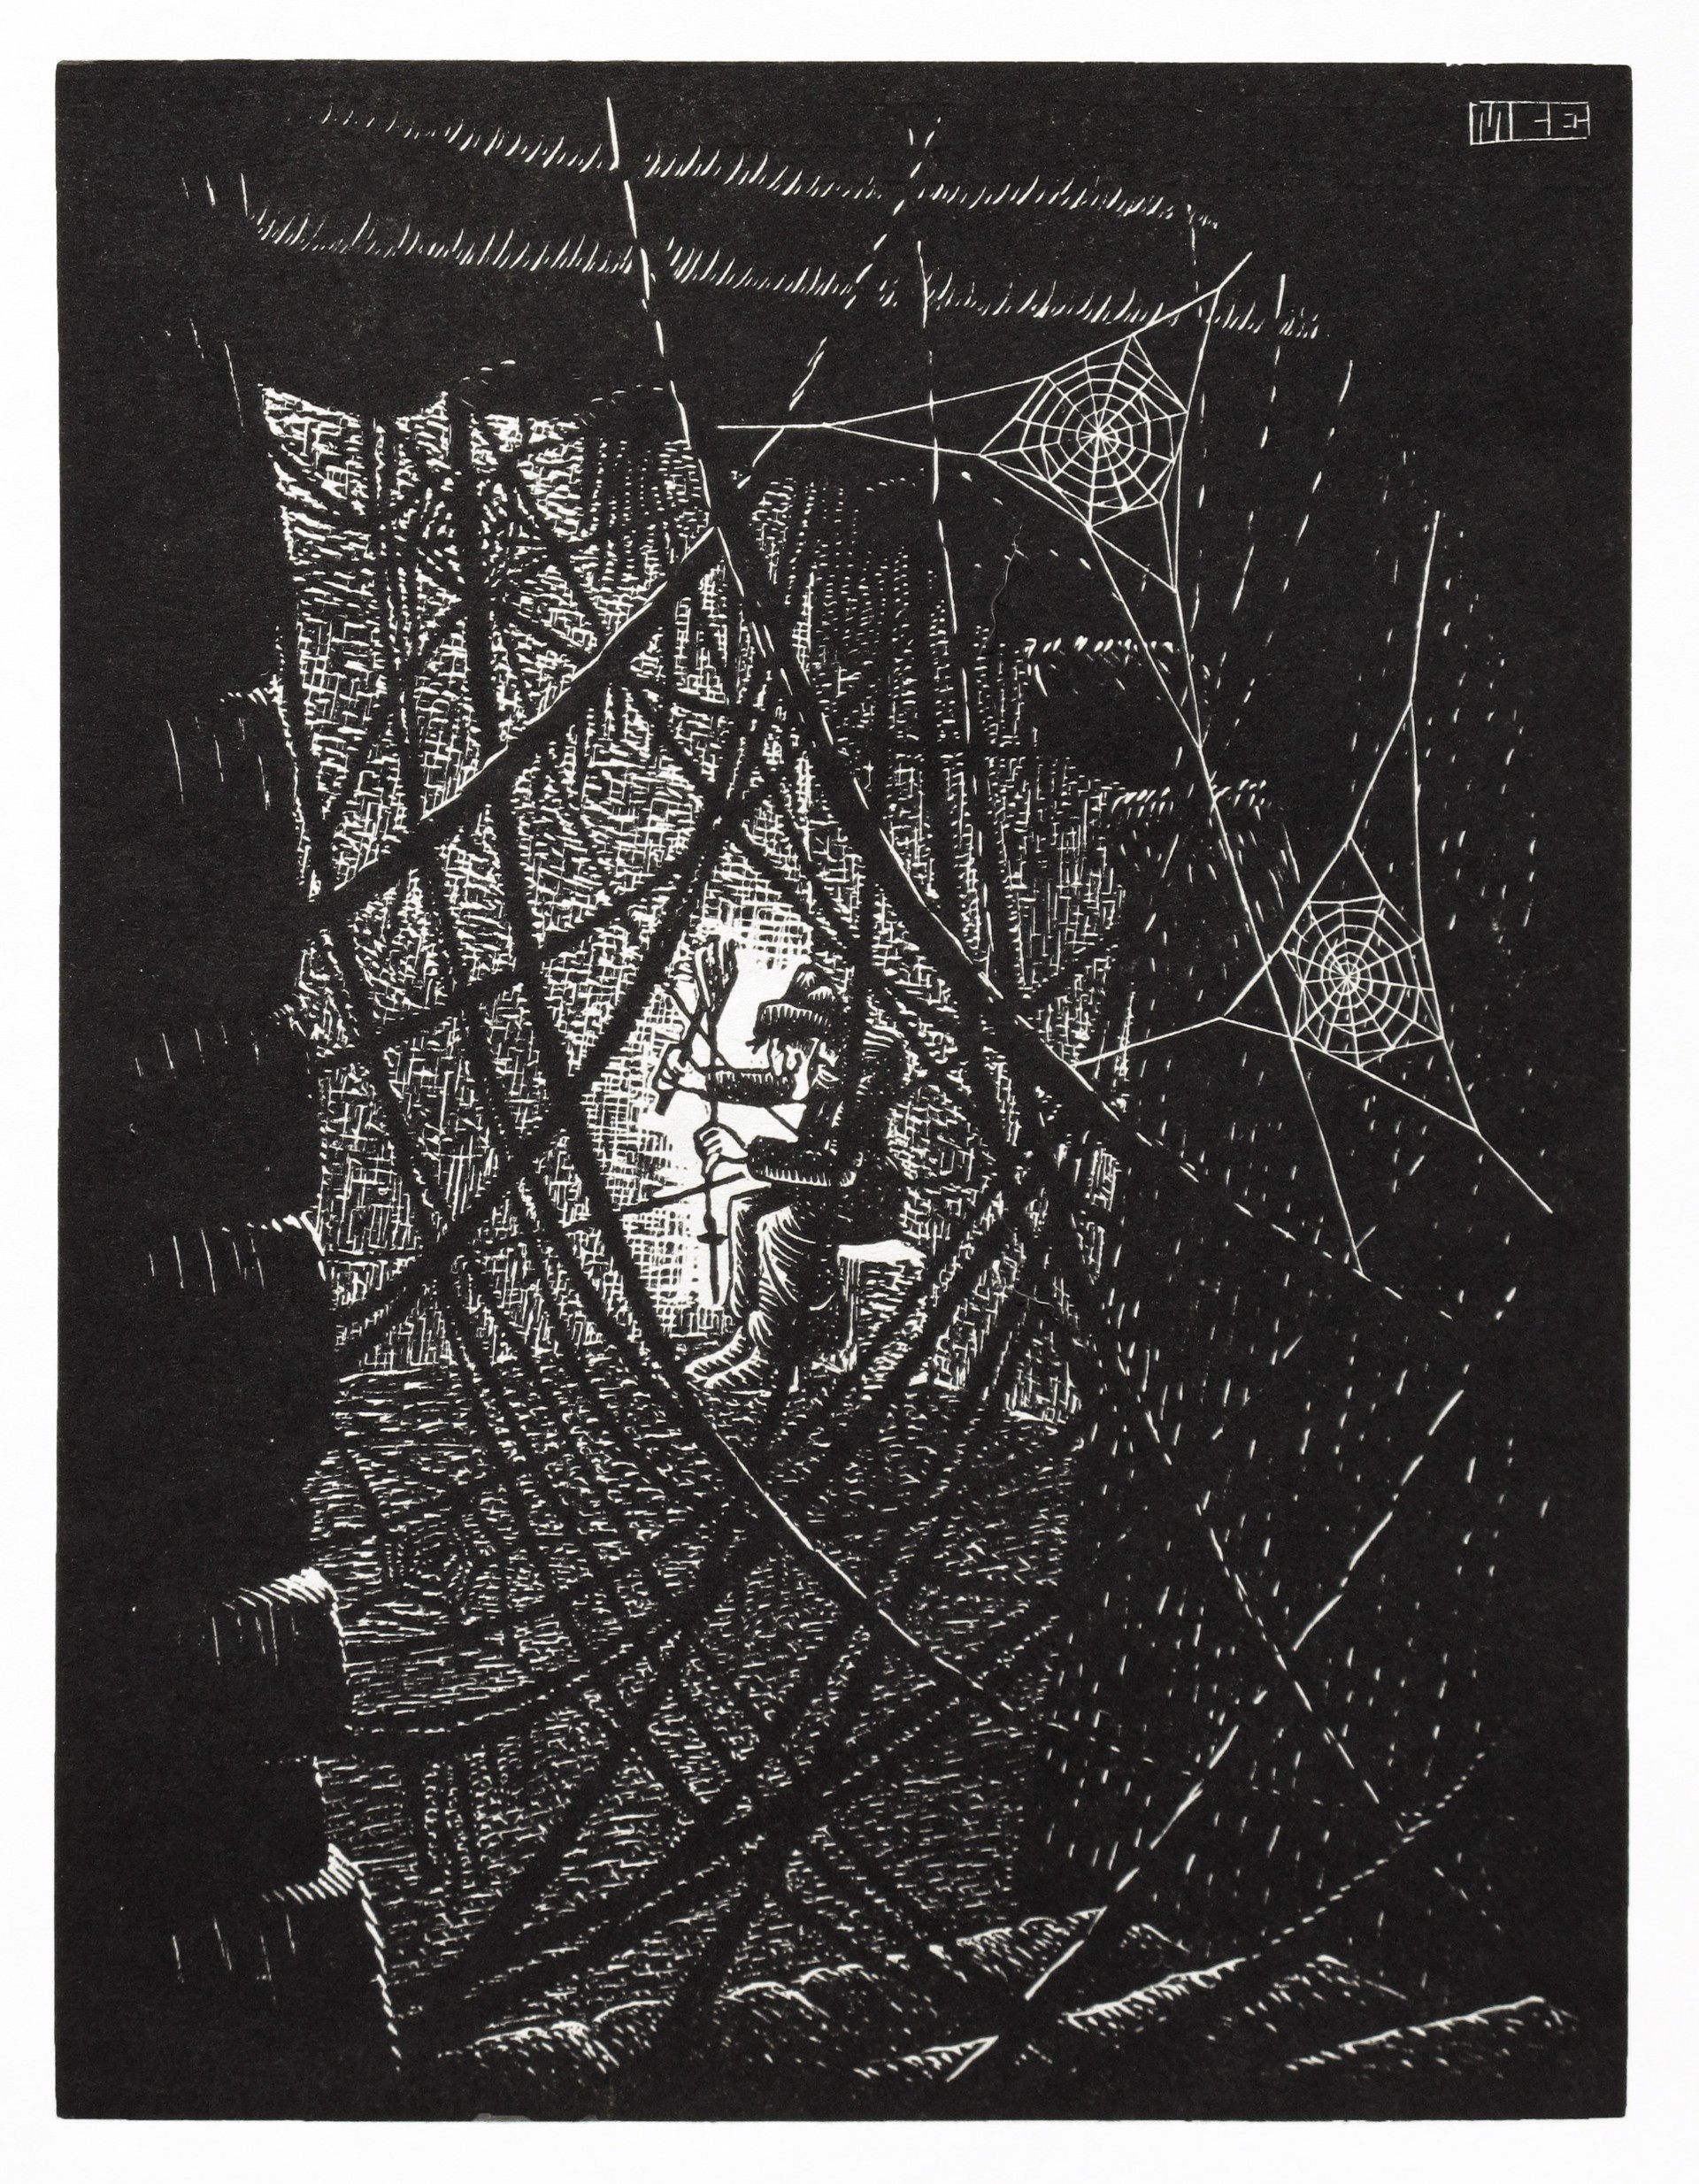 Cobwebs by M.C. Escher